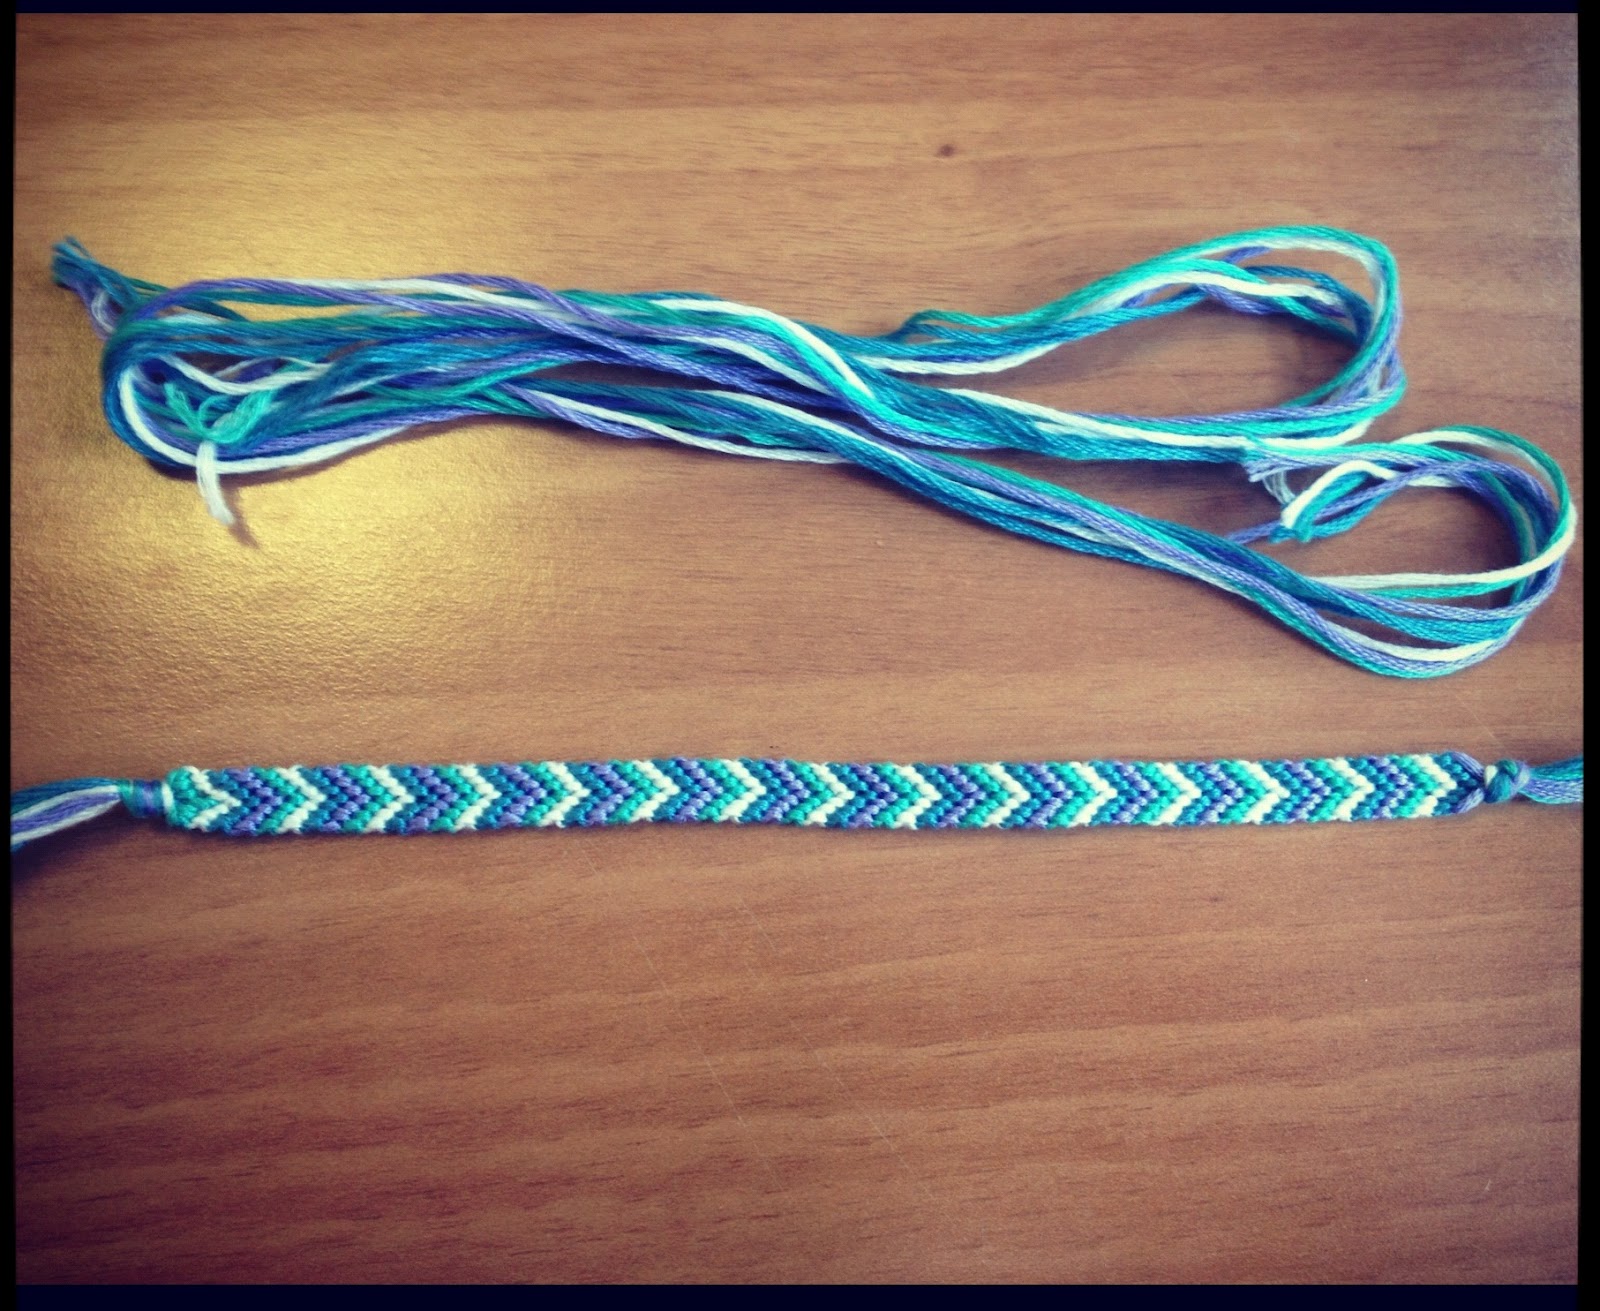 Comment faire un bracelet en fil de coton ?